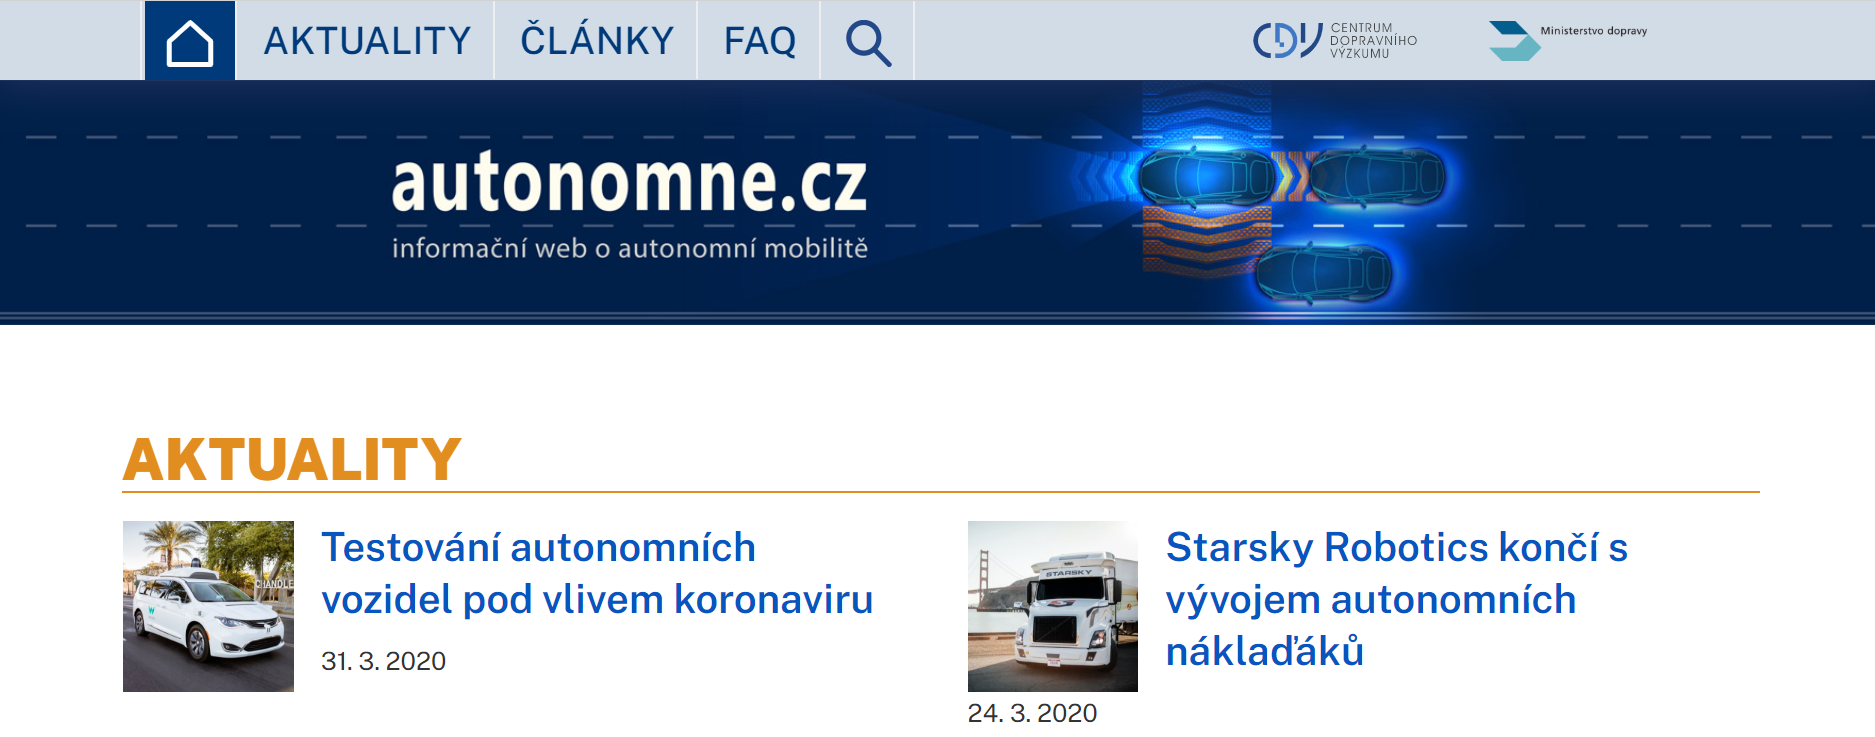 Byl spuštěn nový informační web o autonomní mobilitě Autonomne.cz